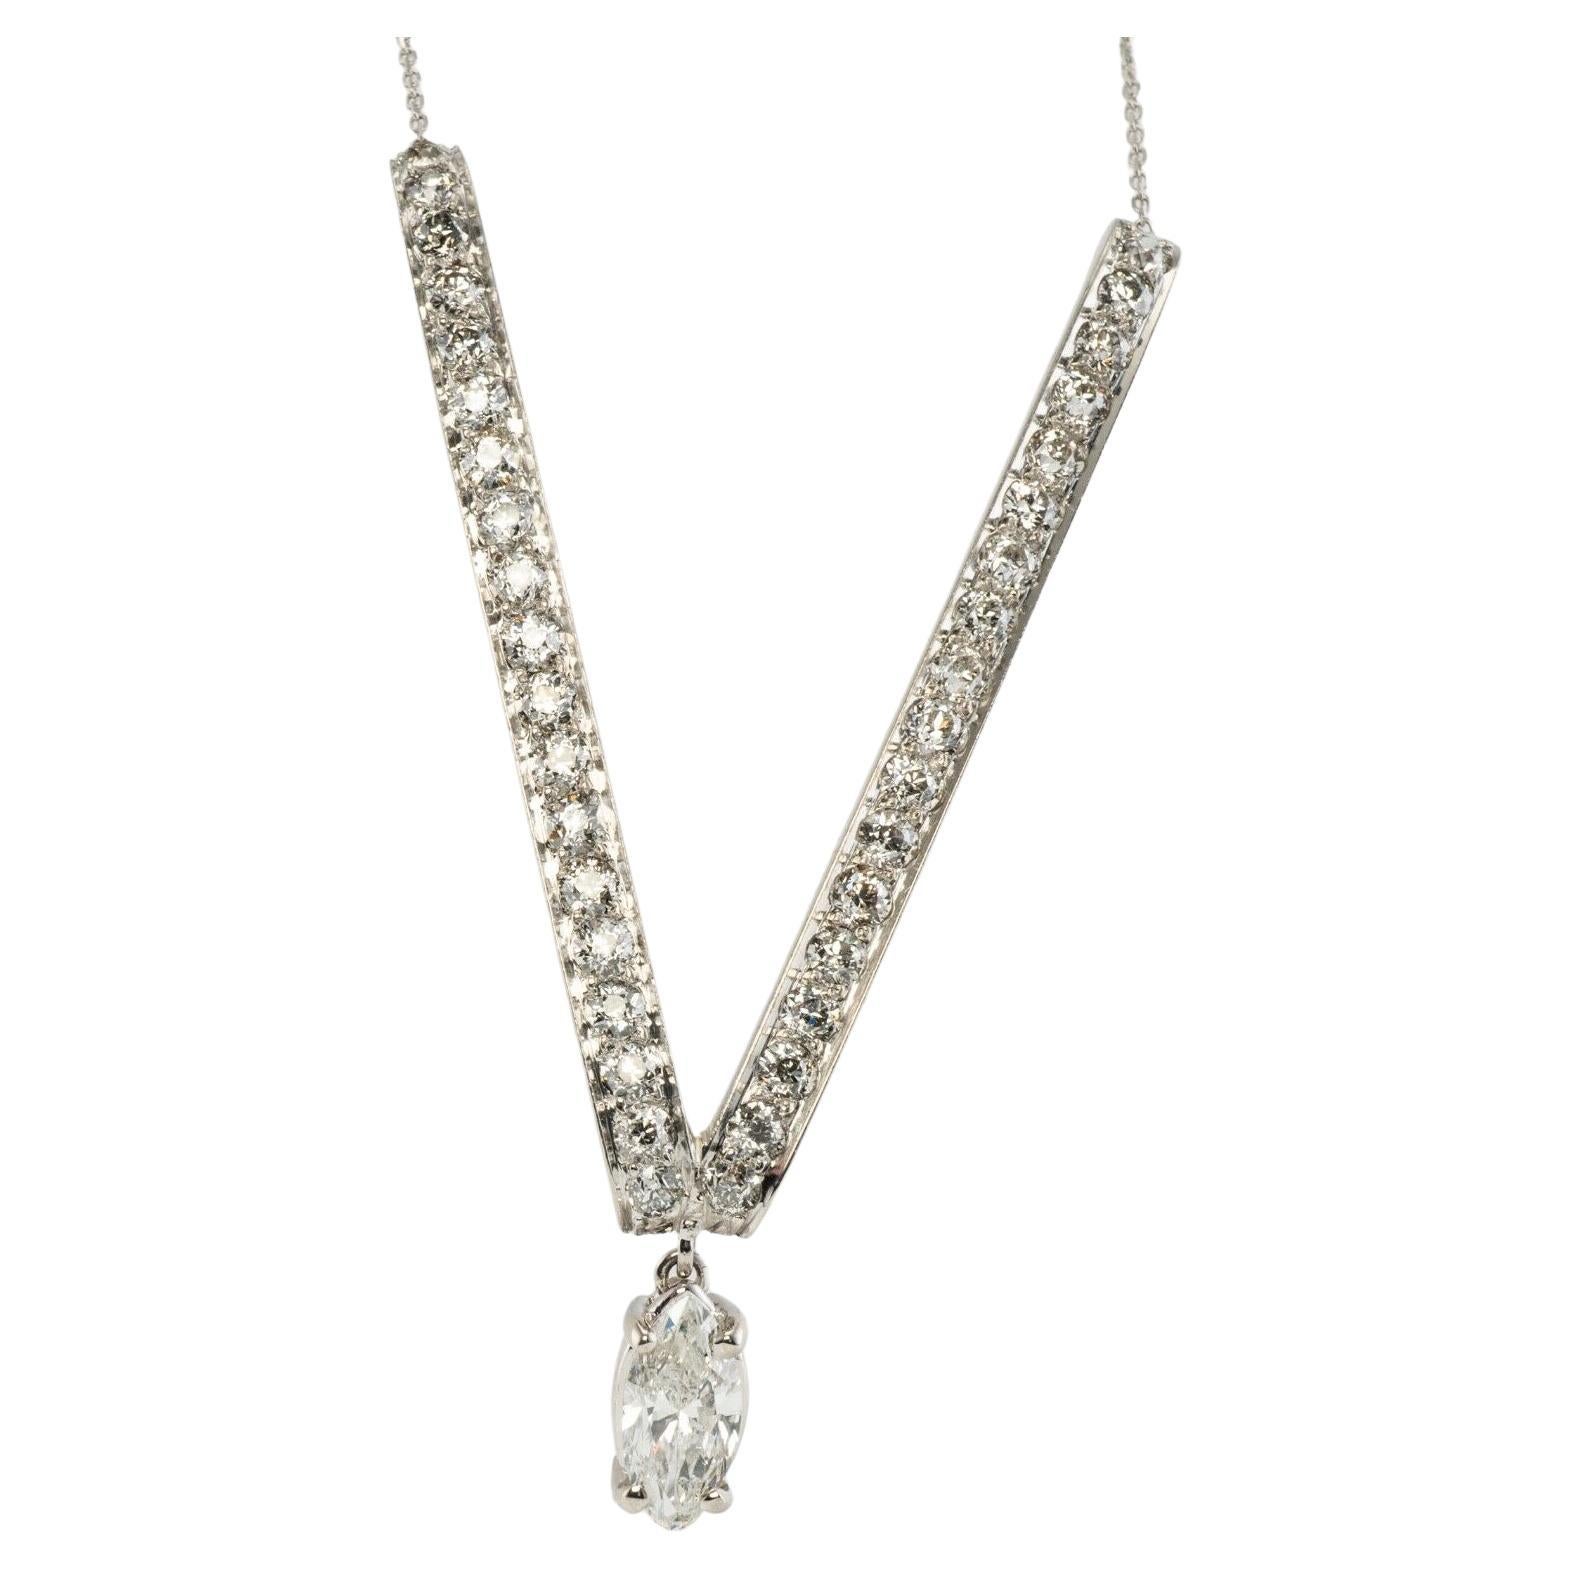 Collier V en diamant Platine et or blanc 14K 1,96 TDW

Ce collier de diamants absolument magnifique est finement réalisé en platine luxueux pour le pendentif en forme de V (soigneusement testé et garanti) et en or blanc massif 14K pour la chaîne.
Le